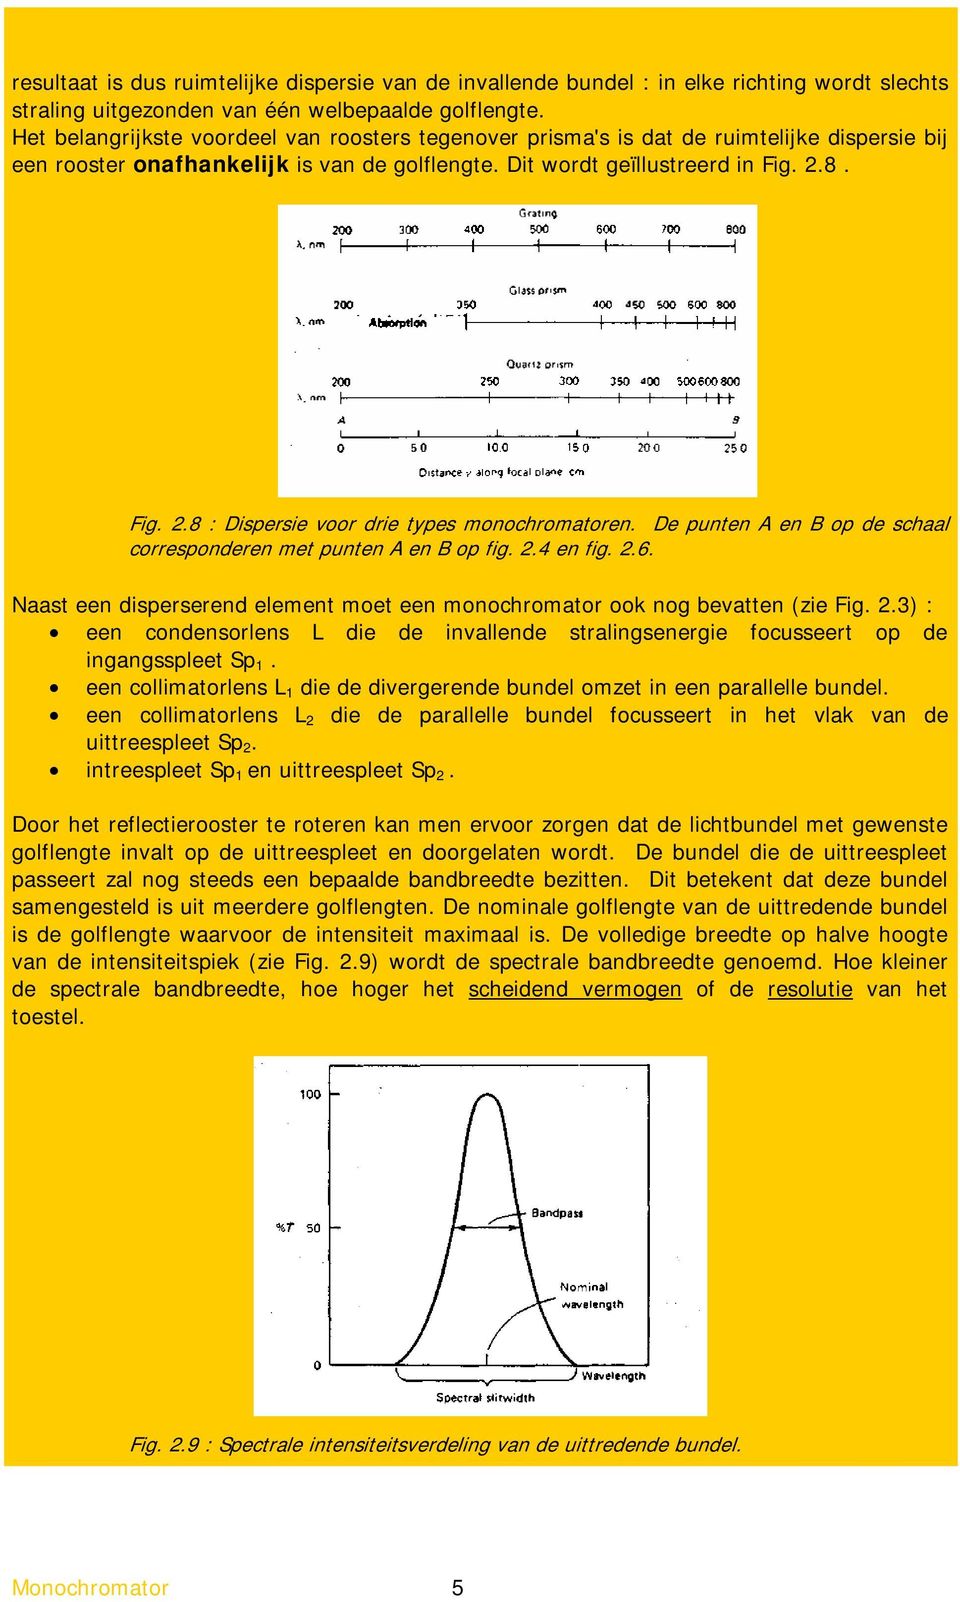 8. Fig. 2.8 : Dispersie voor drie types monochromatoren. De punten A en B op de schaal corresponderen met punten A en B op fig. 2.4 en fig. 2.6.